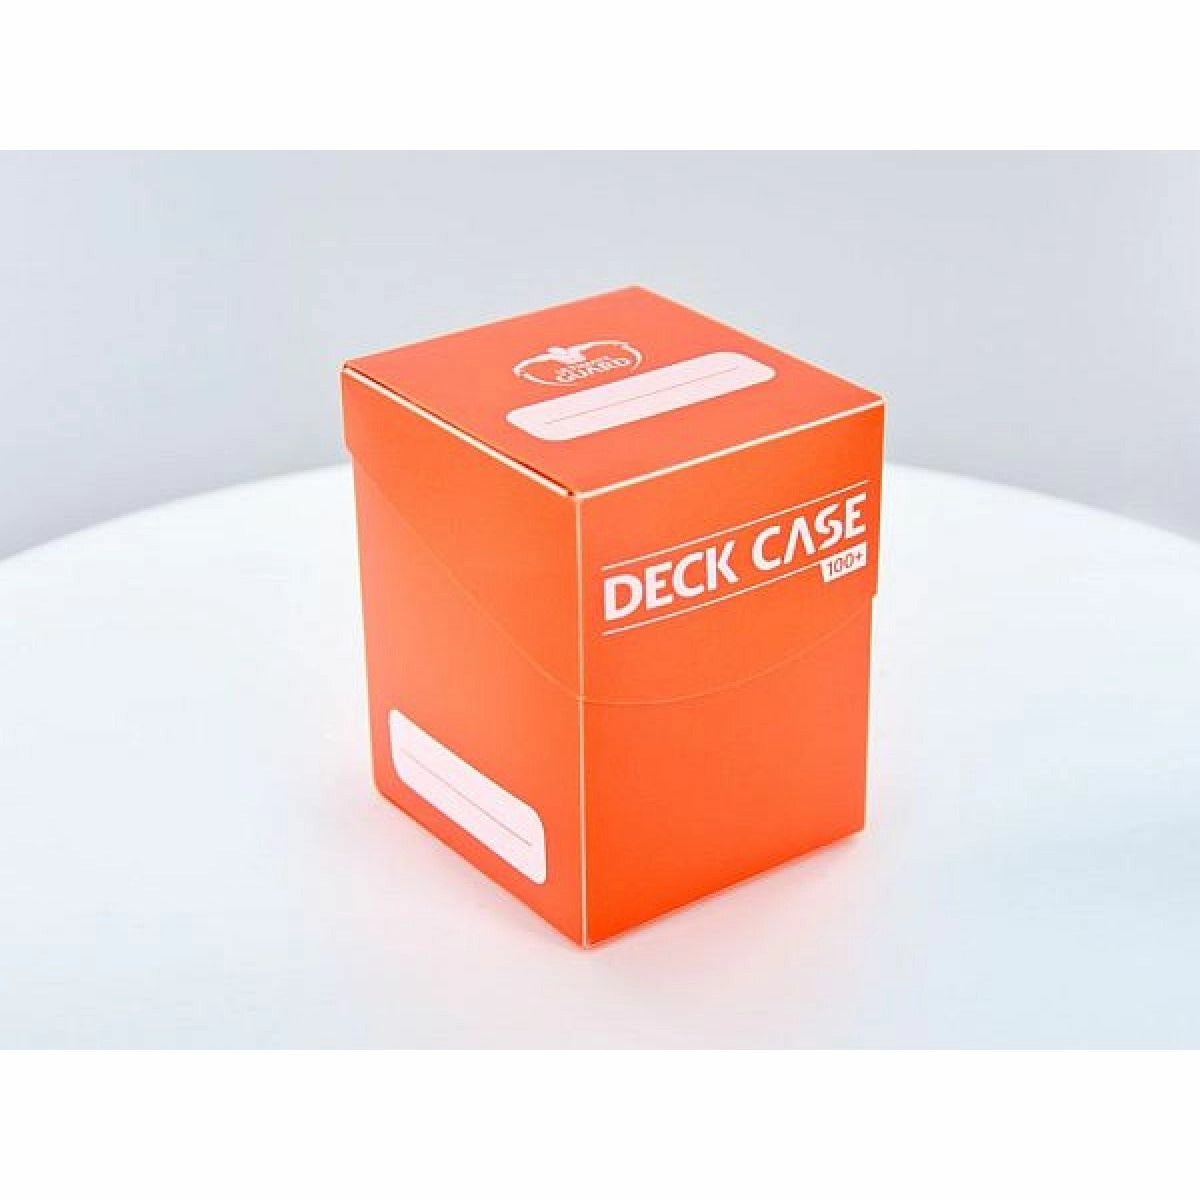 Ultimate Guard Orange Deck Case 100+